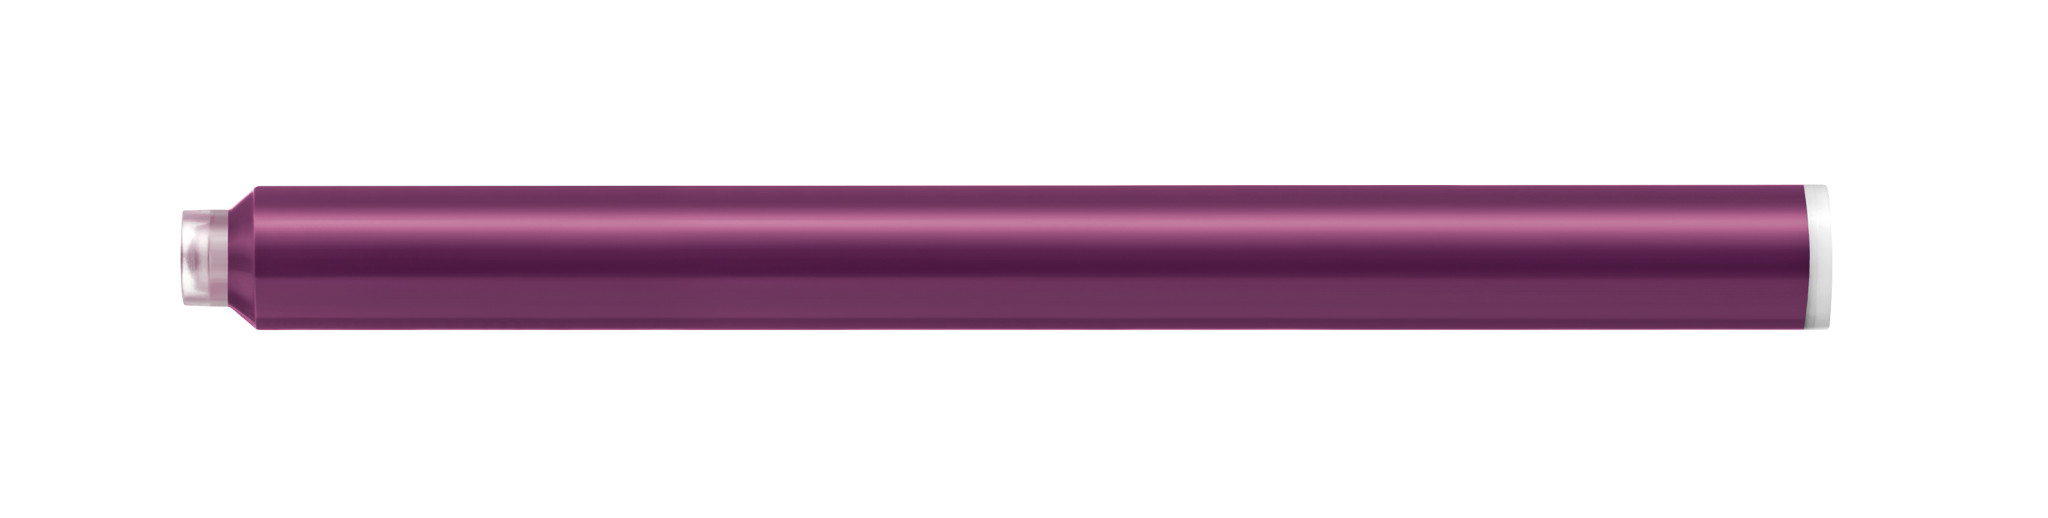 Pelikan | Tintenpatrone 4001 Großraum ilo GTP/5 violett